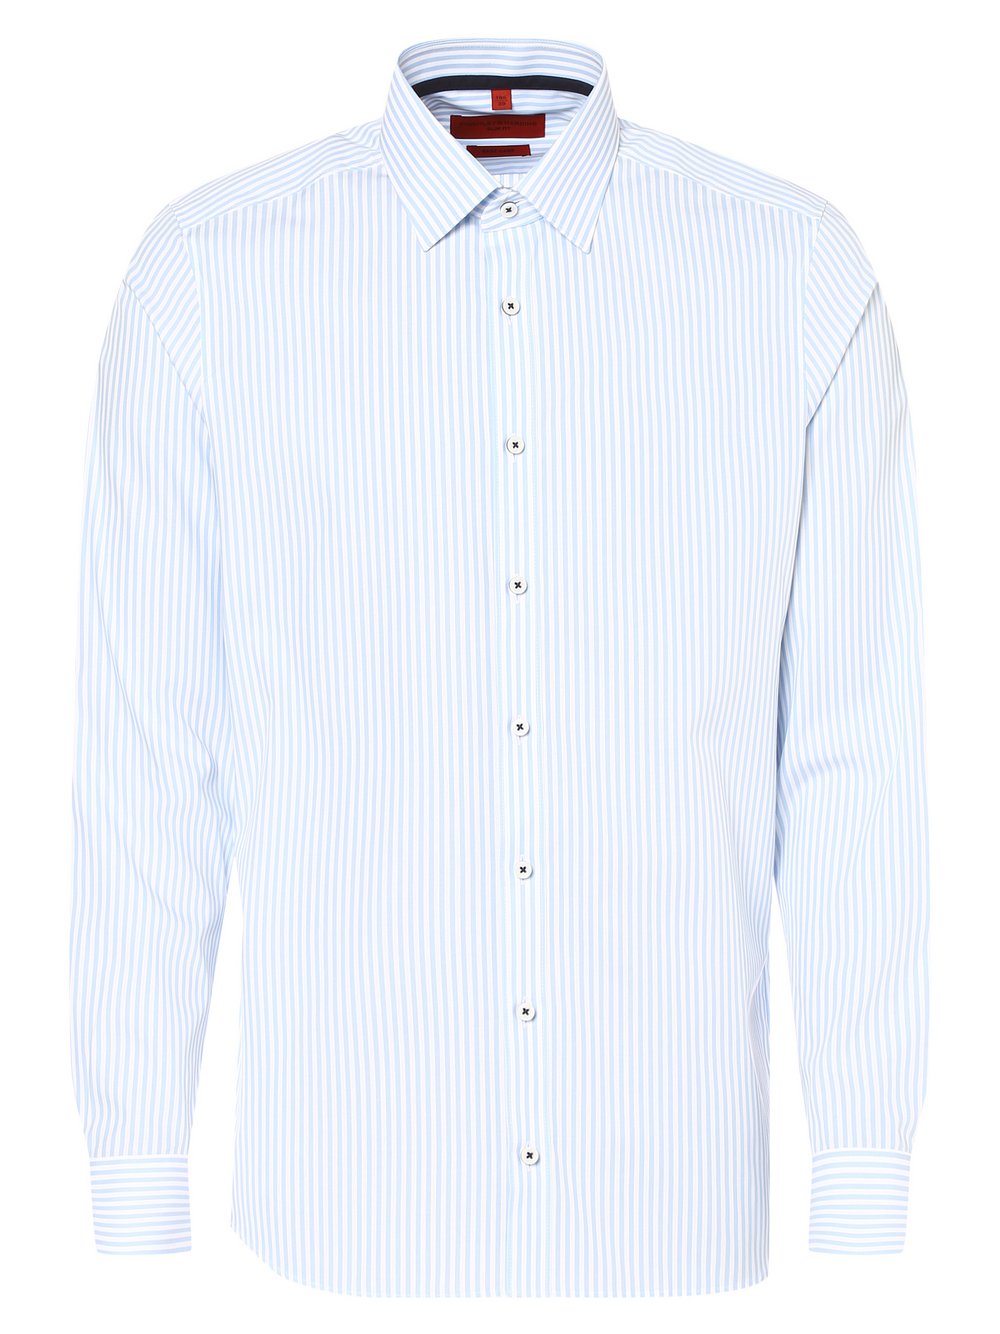 Finshley & Harding - Koszula męska łatwa w prasowaniu, niebieski|biały